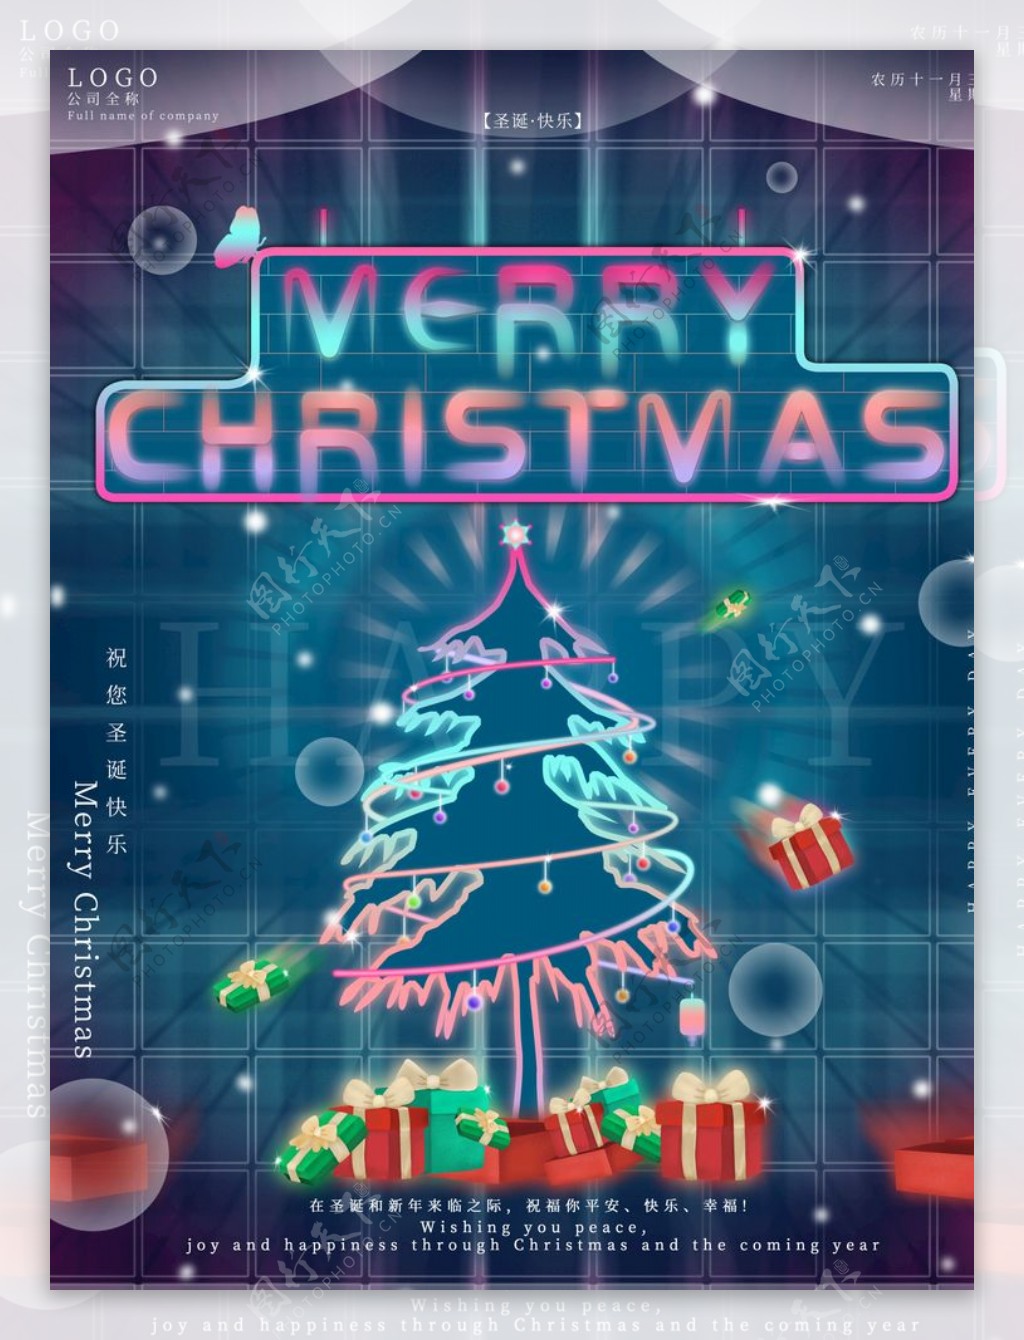 原创科技空间梦幻圣诞节祝福海报